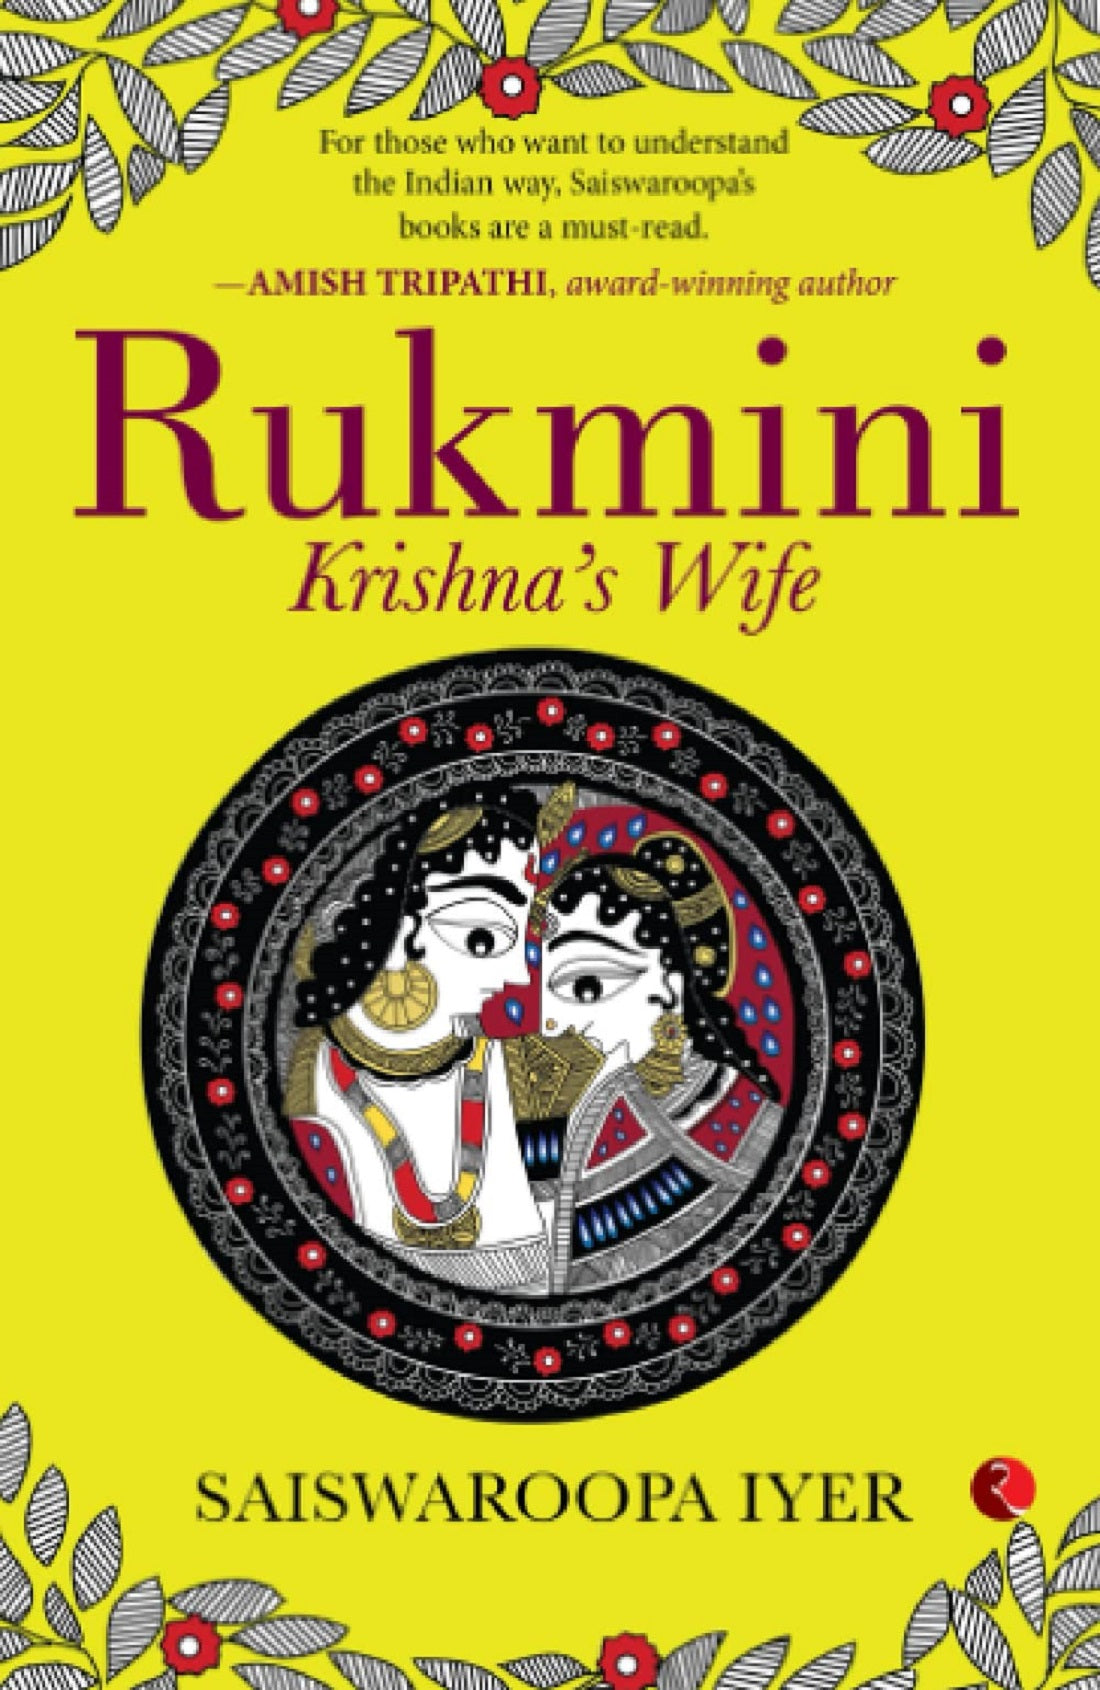 RUKMINI KRISHNA'S WIFE